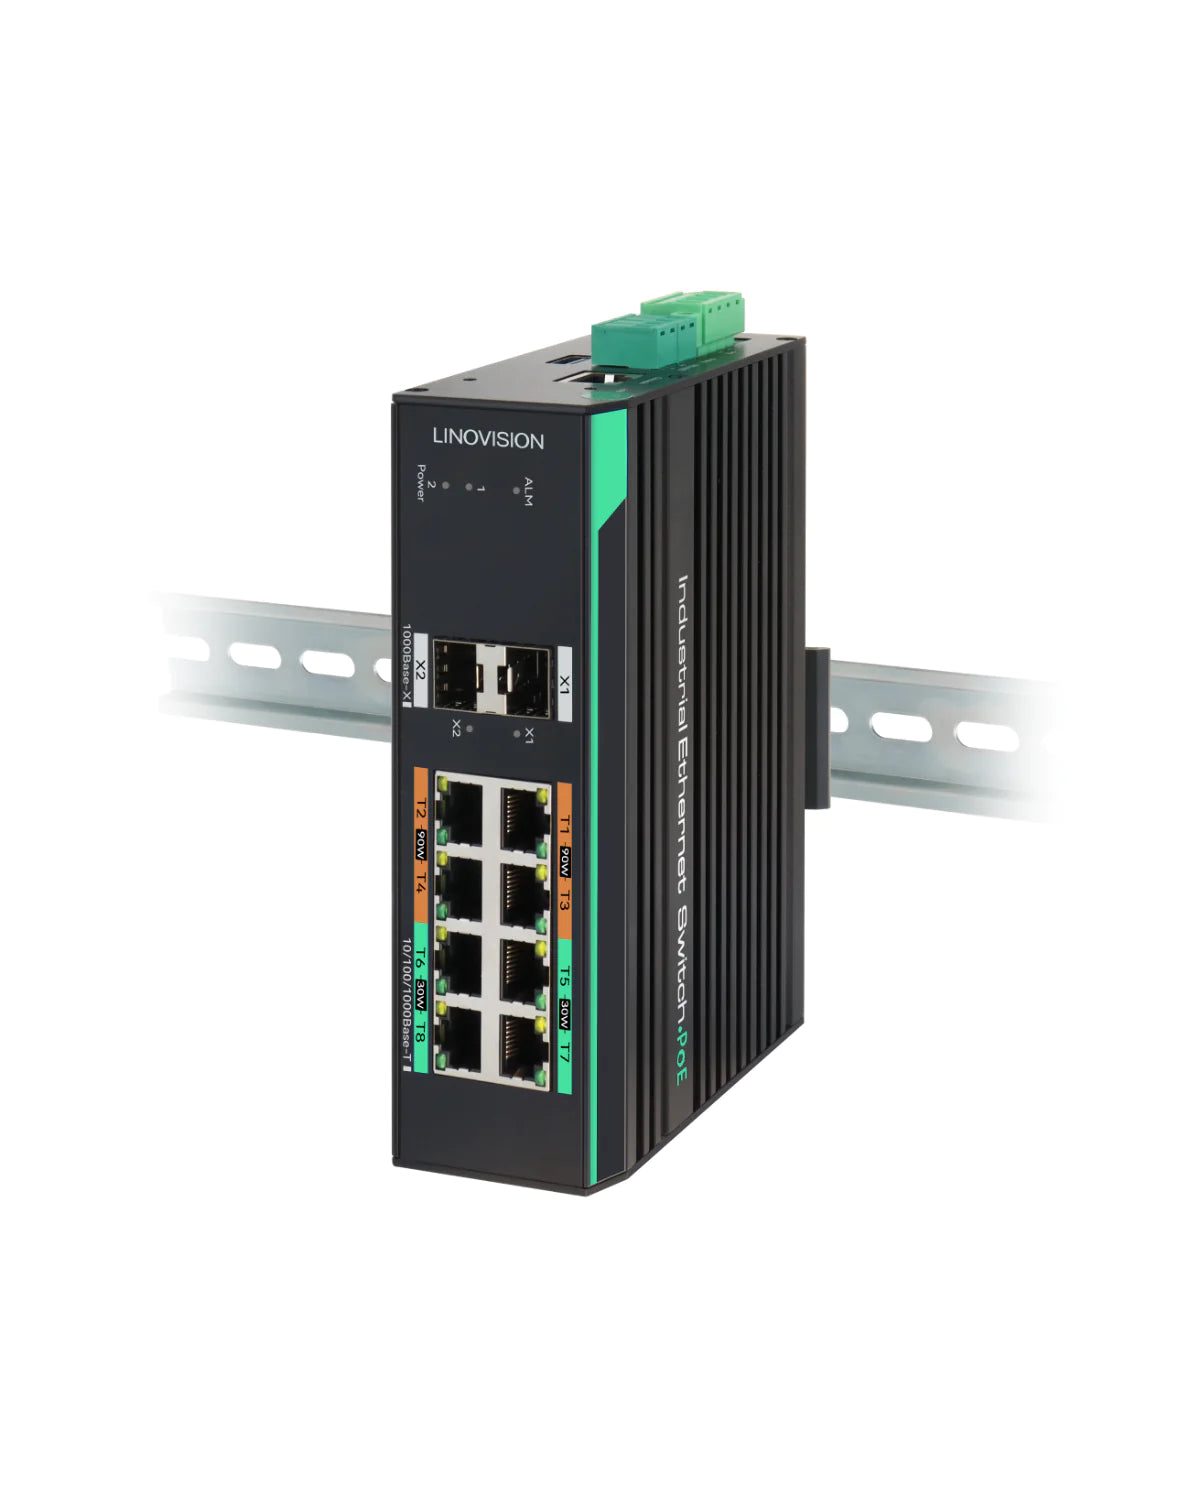 8 Ports Full Gigabit Managed PoE Switch with 2 Gigabit SFP Uplinks